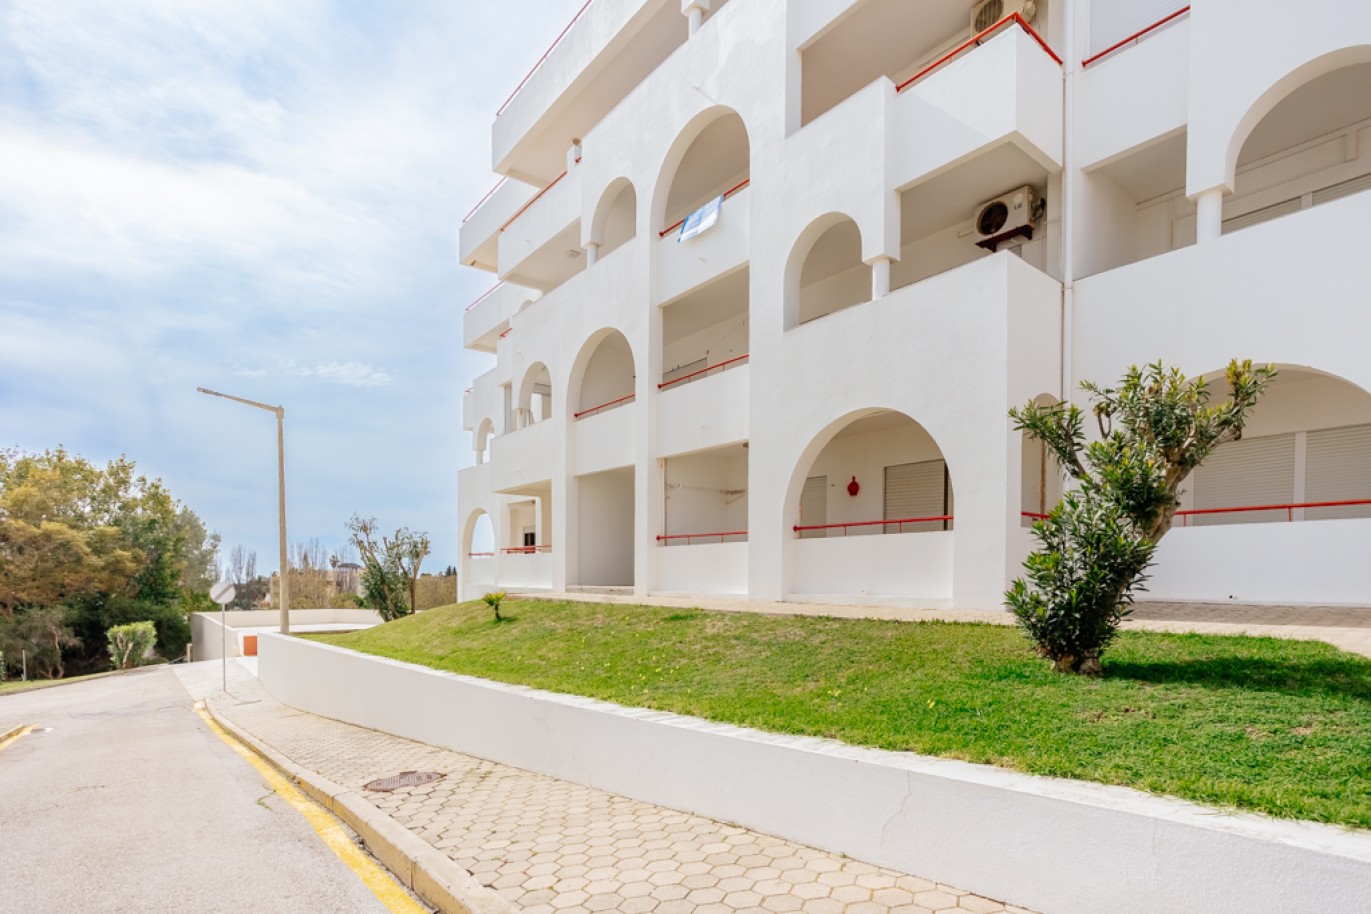 Apartamento com 1+1 quartos, com vista mar, para venda em Porches, Algarve_257028